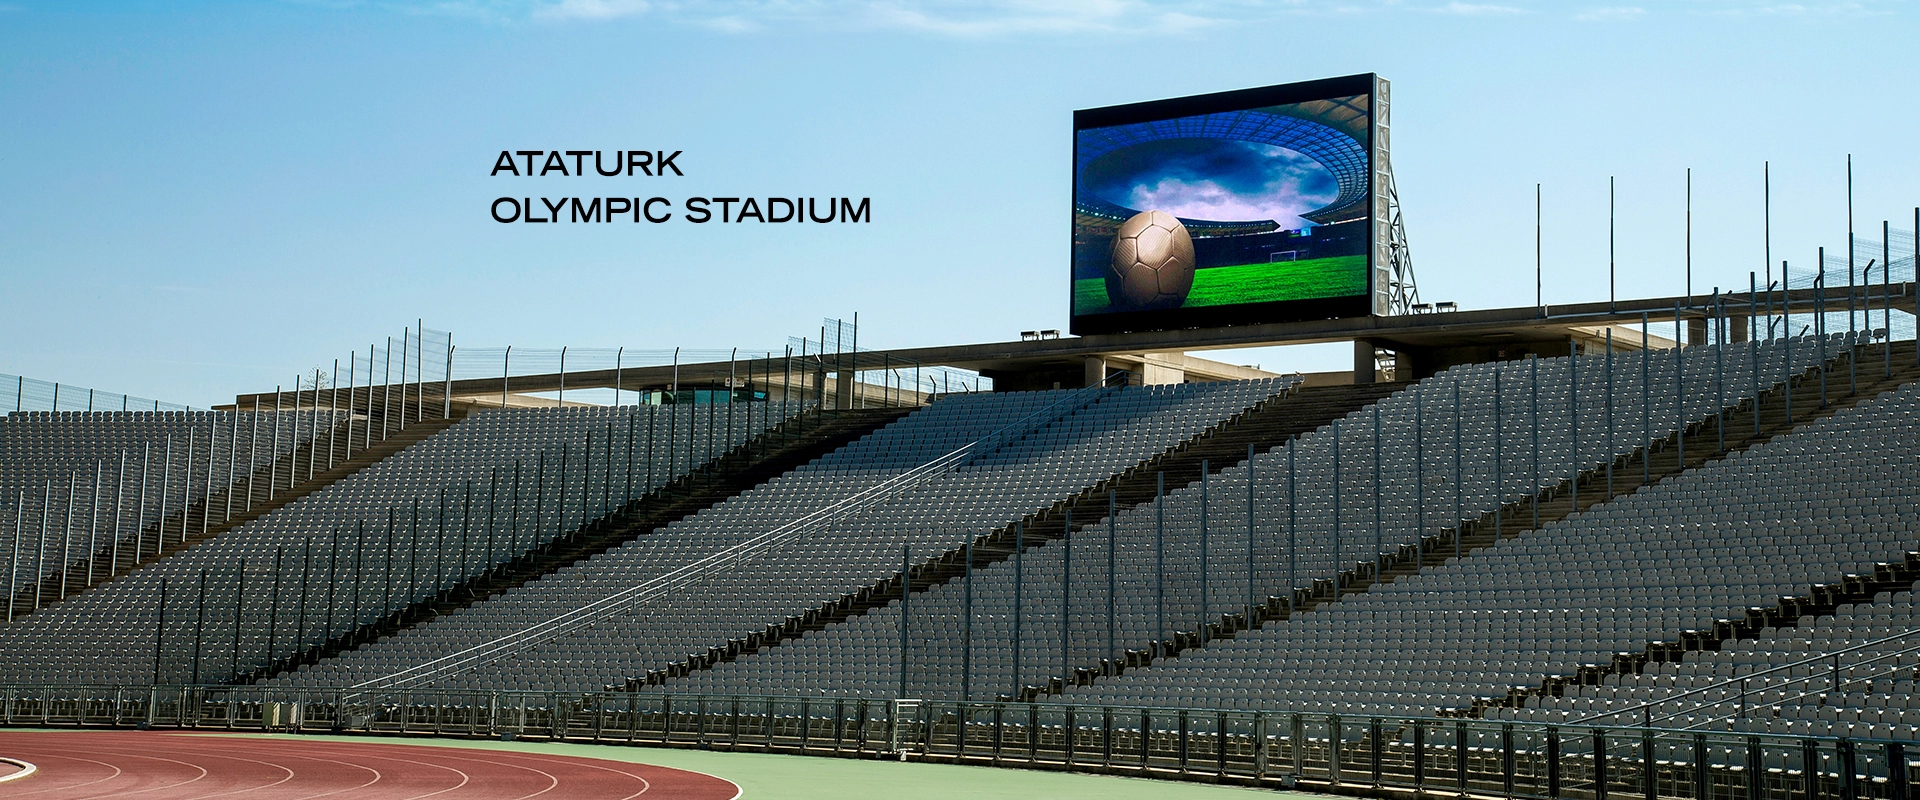 Taglig, Ataturk Olympic Stadium